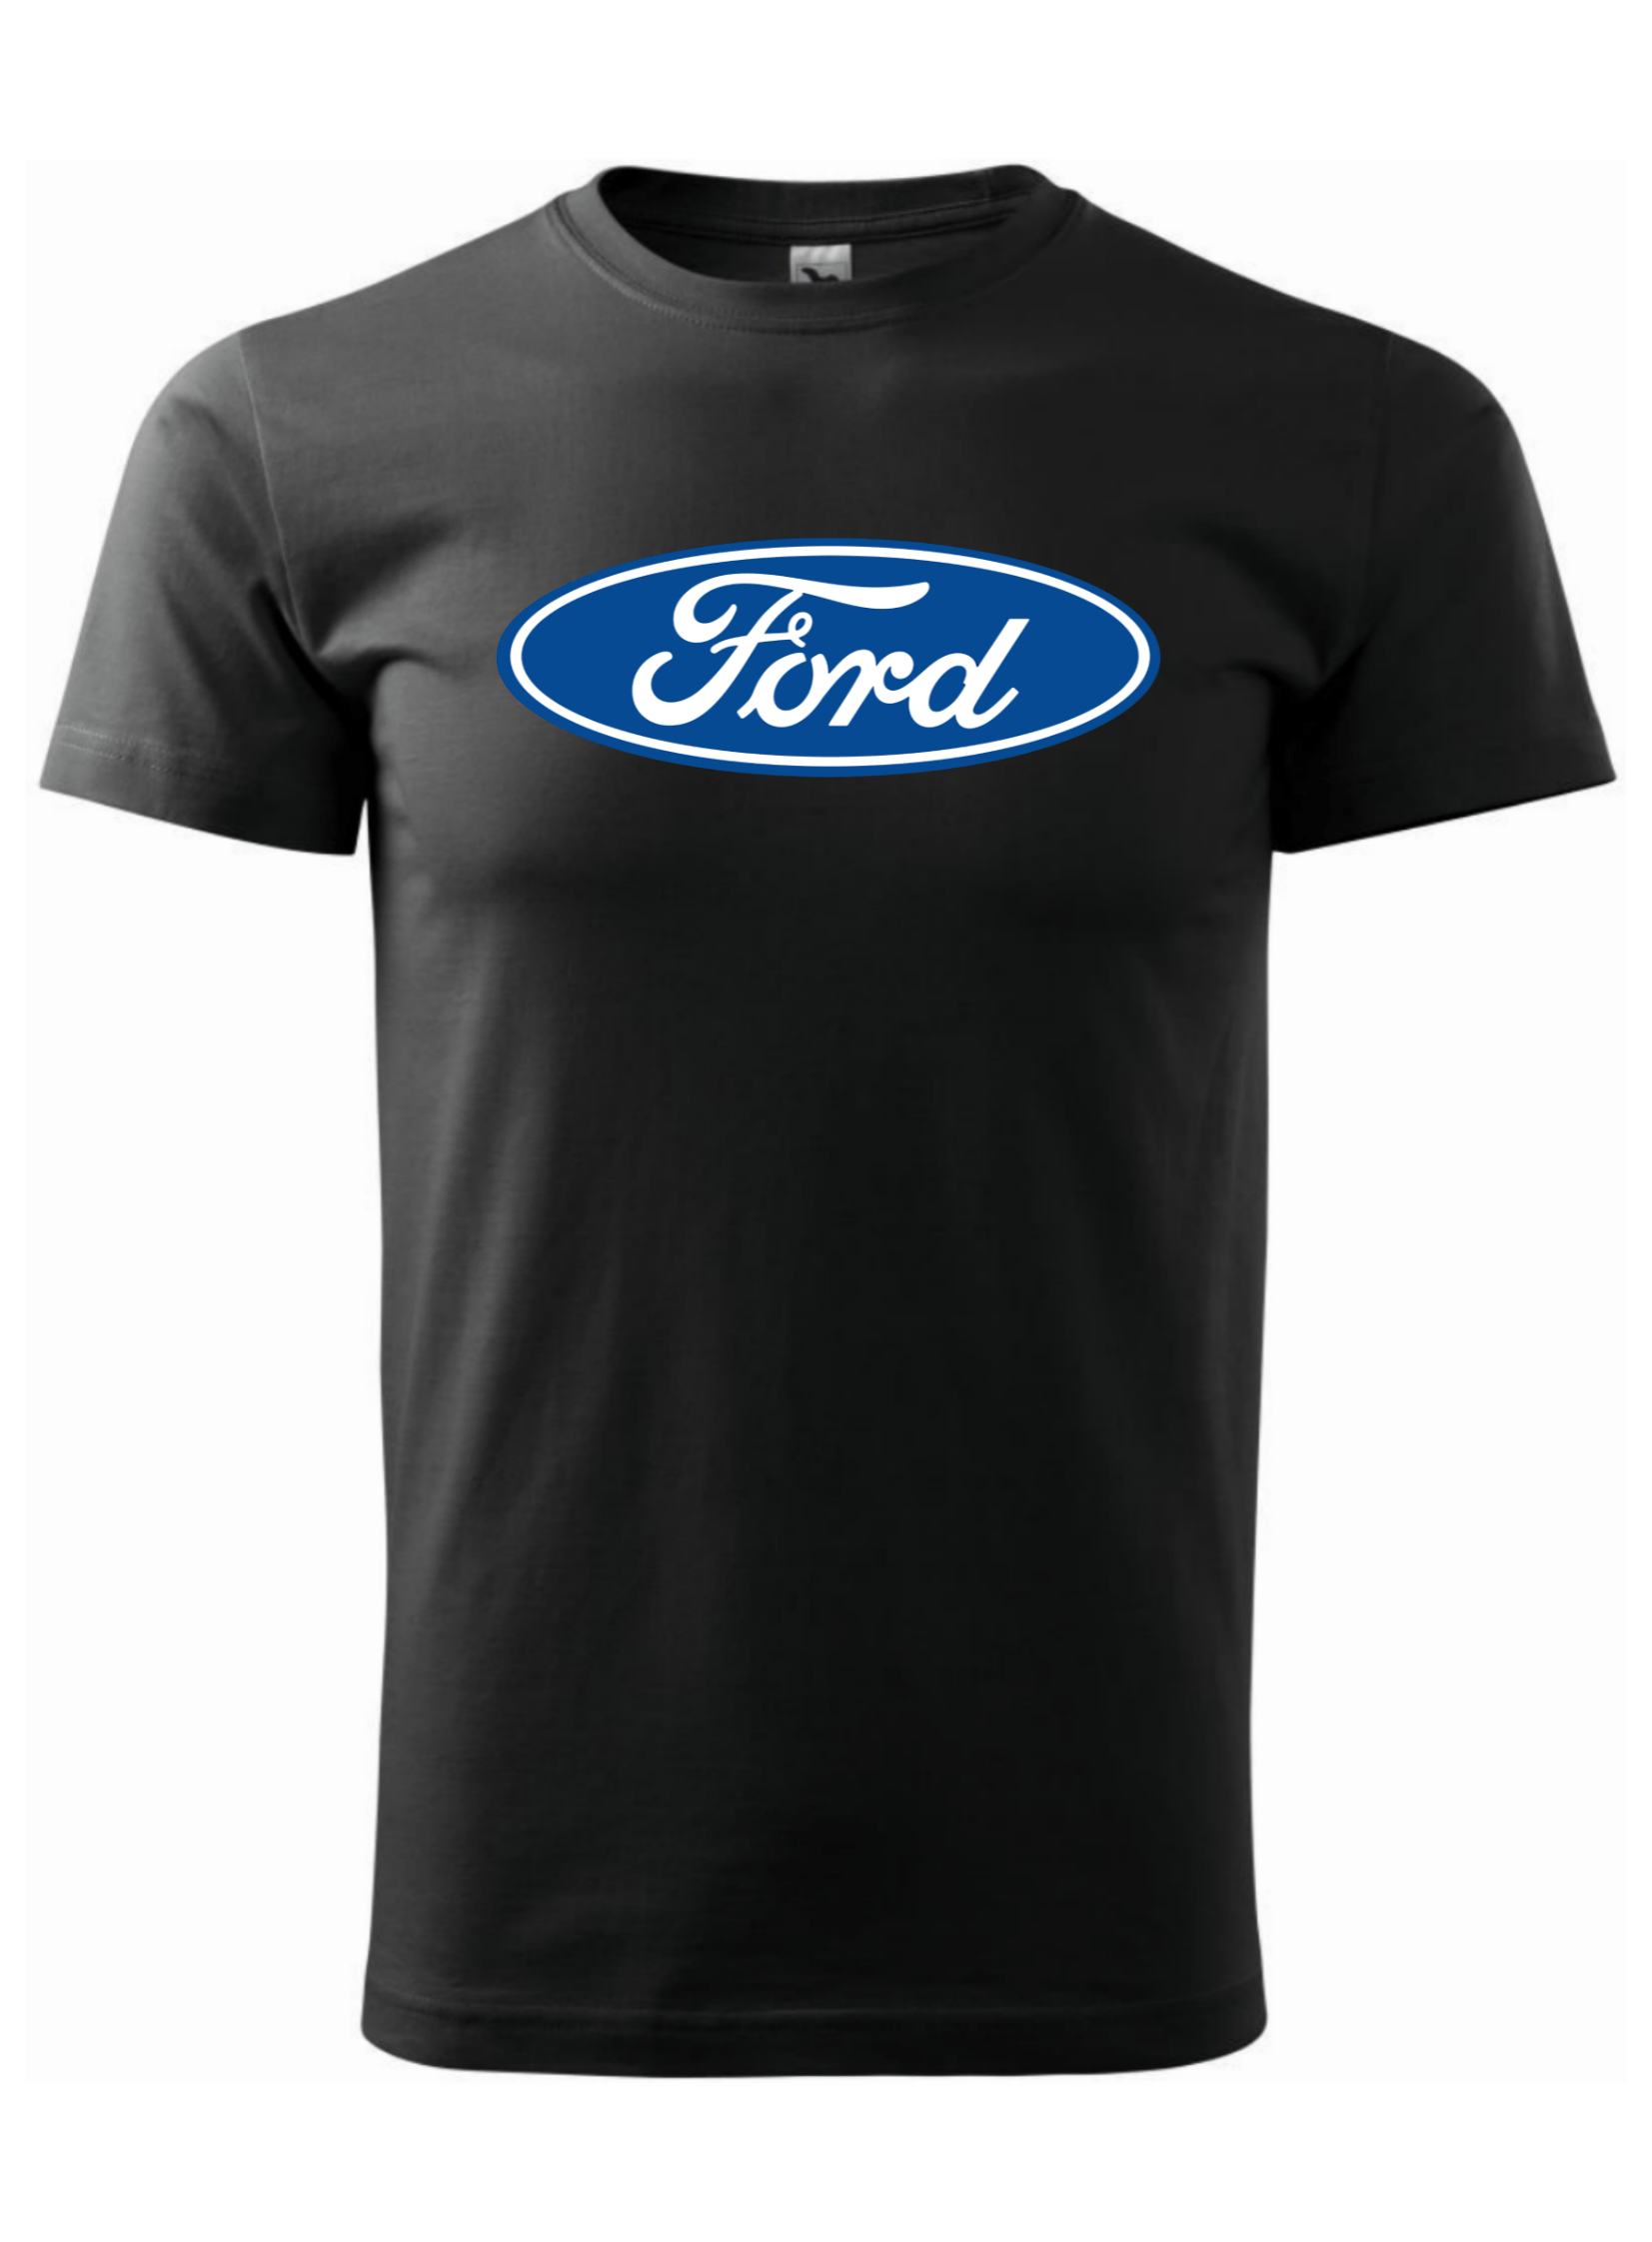 Pánské tričko s potiskem značky Ford